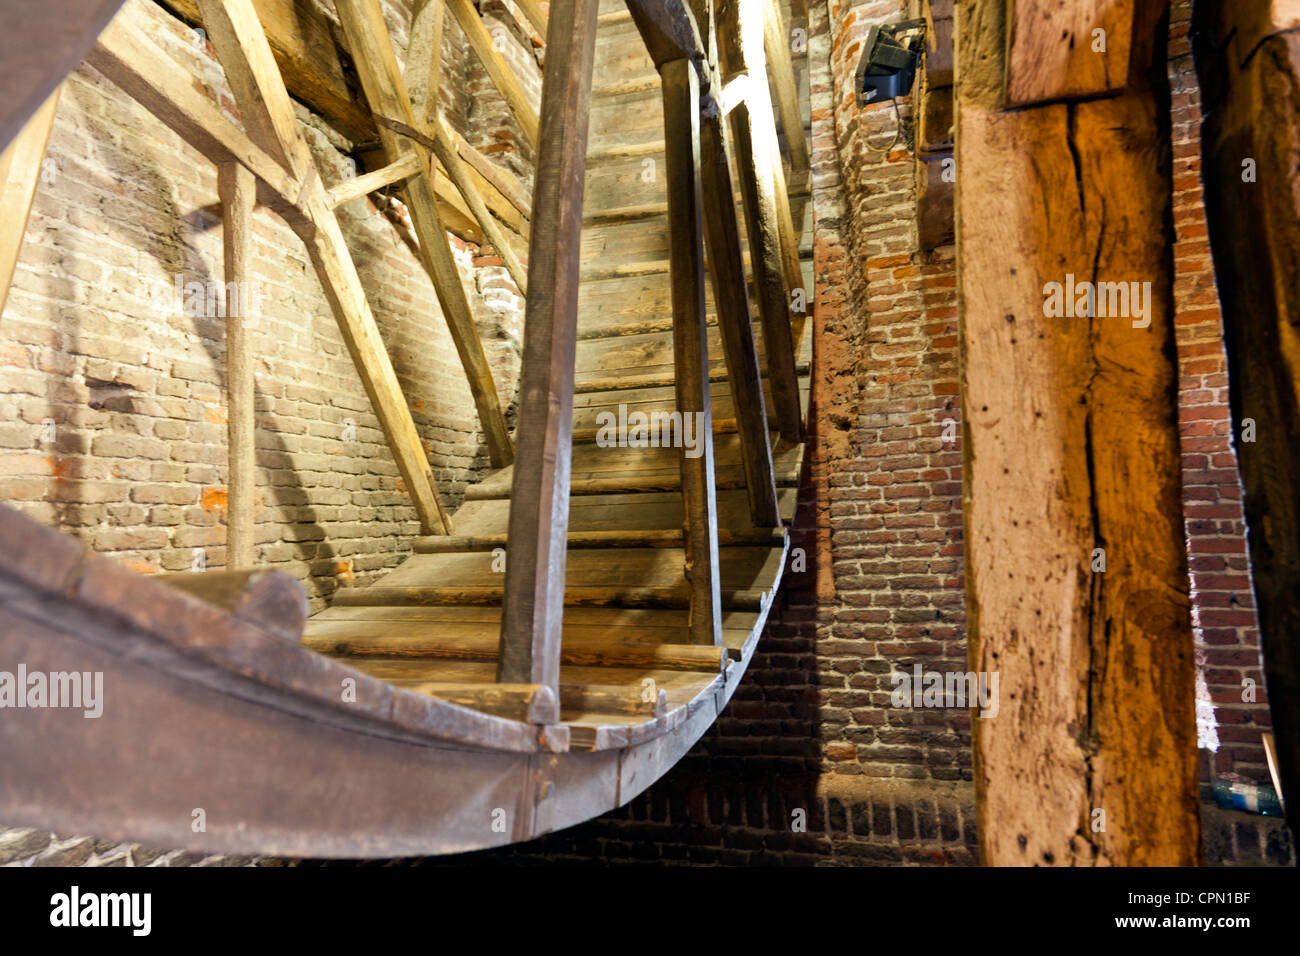 Amersfoort, Pays-Bas : la grande roue en bois à l'intérieur du Koppelpoort, une porte médiévale dans la ville. Banque D'Images